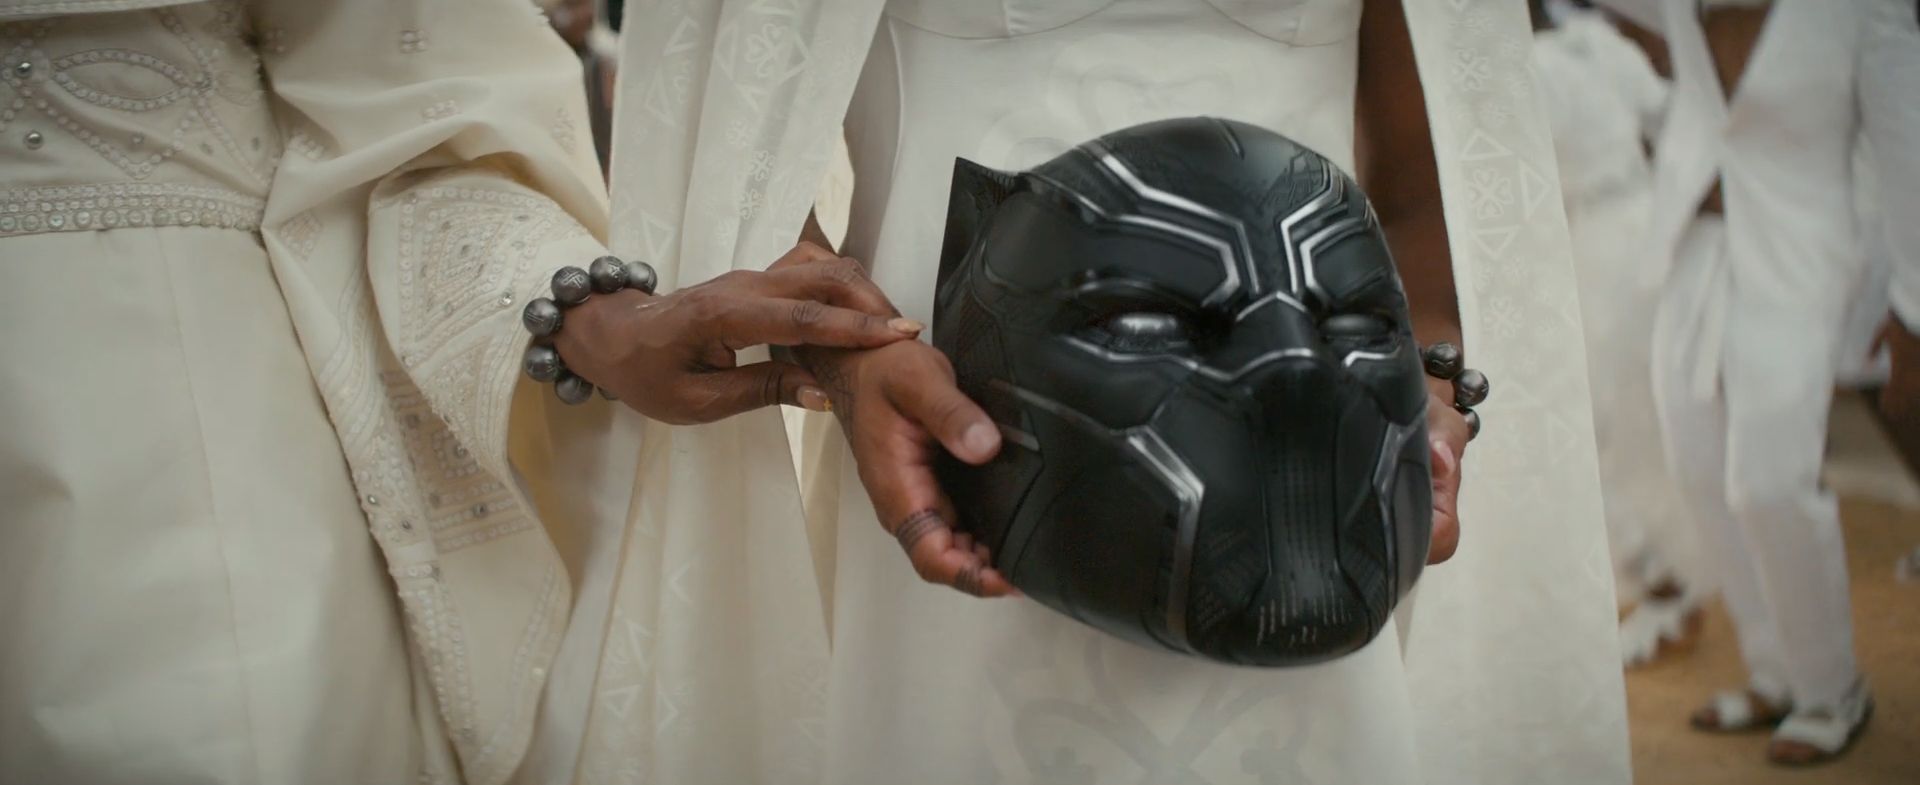 Killmonger's Wakanda Forever Scene Explained by MCU Writer